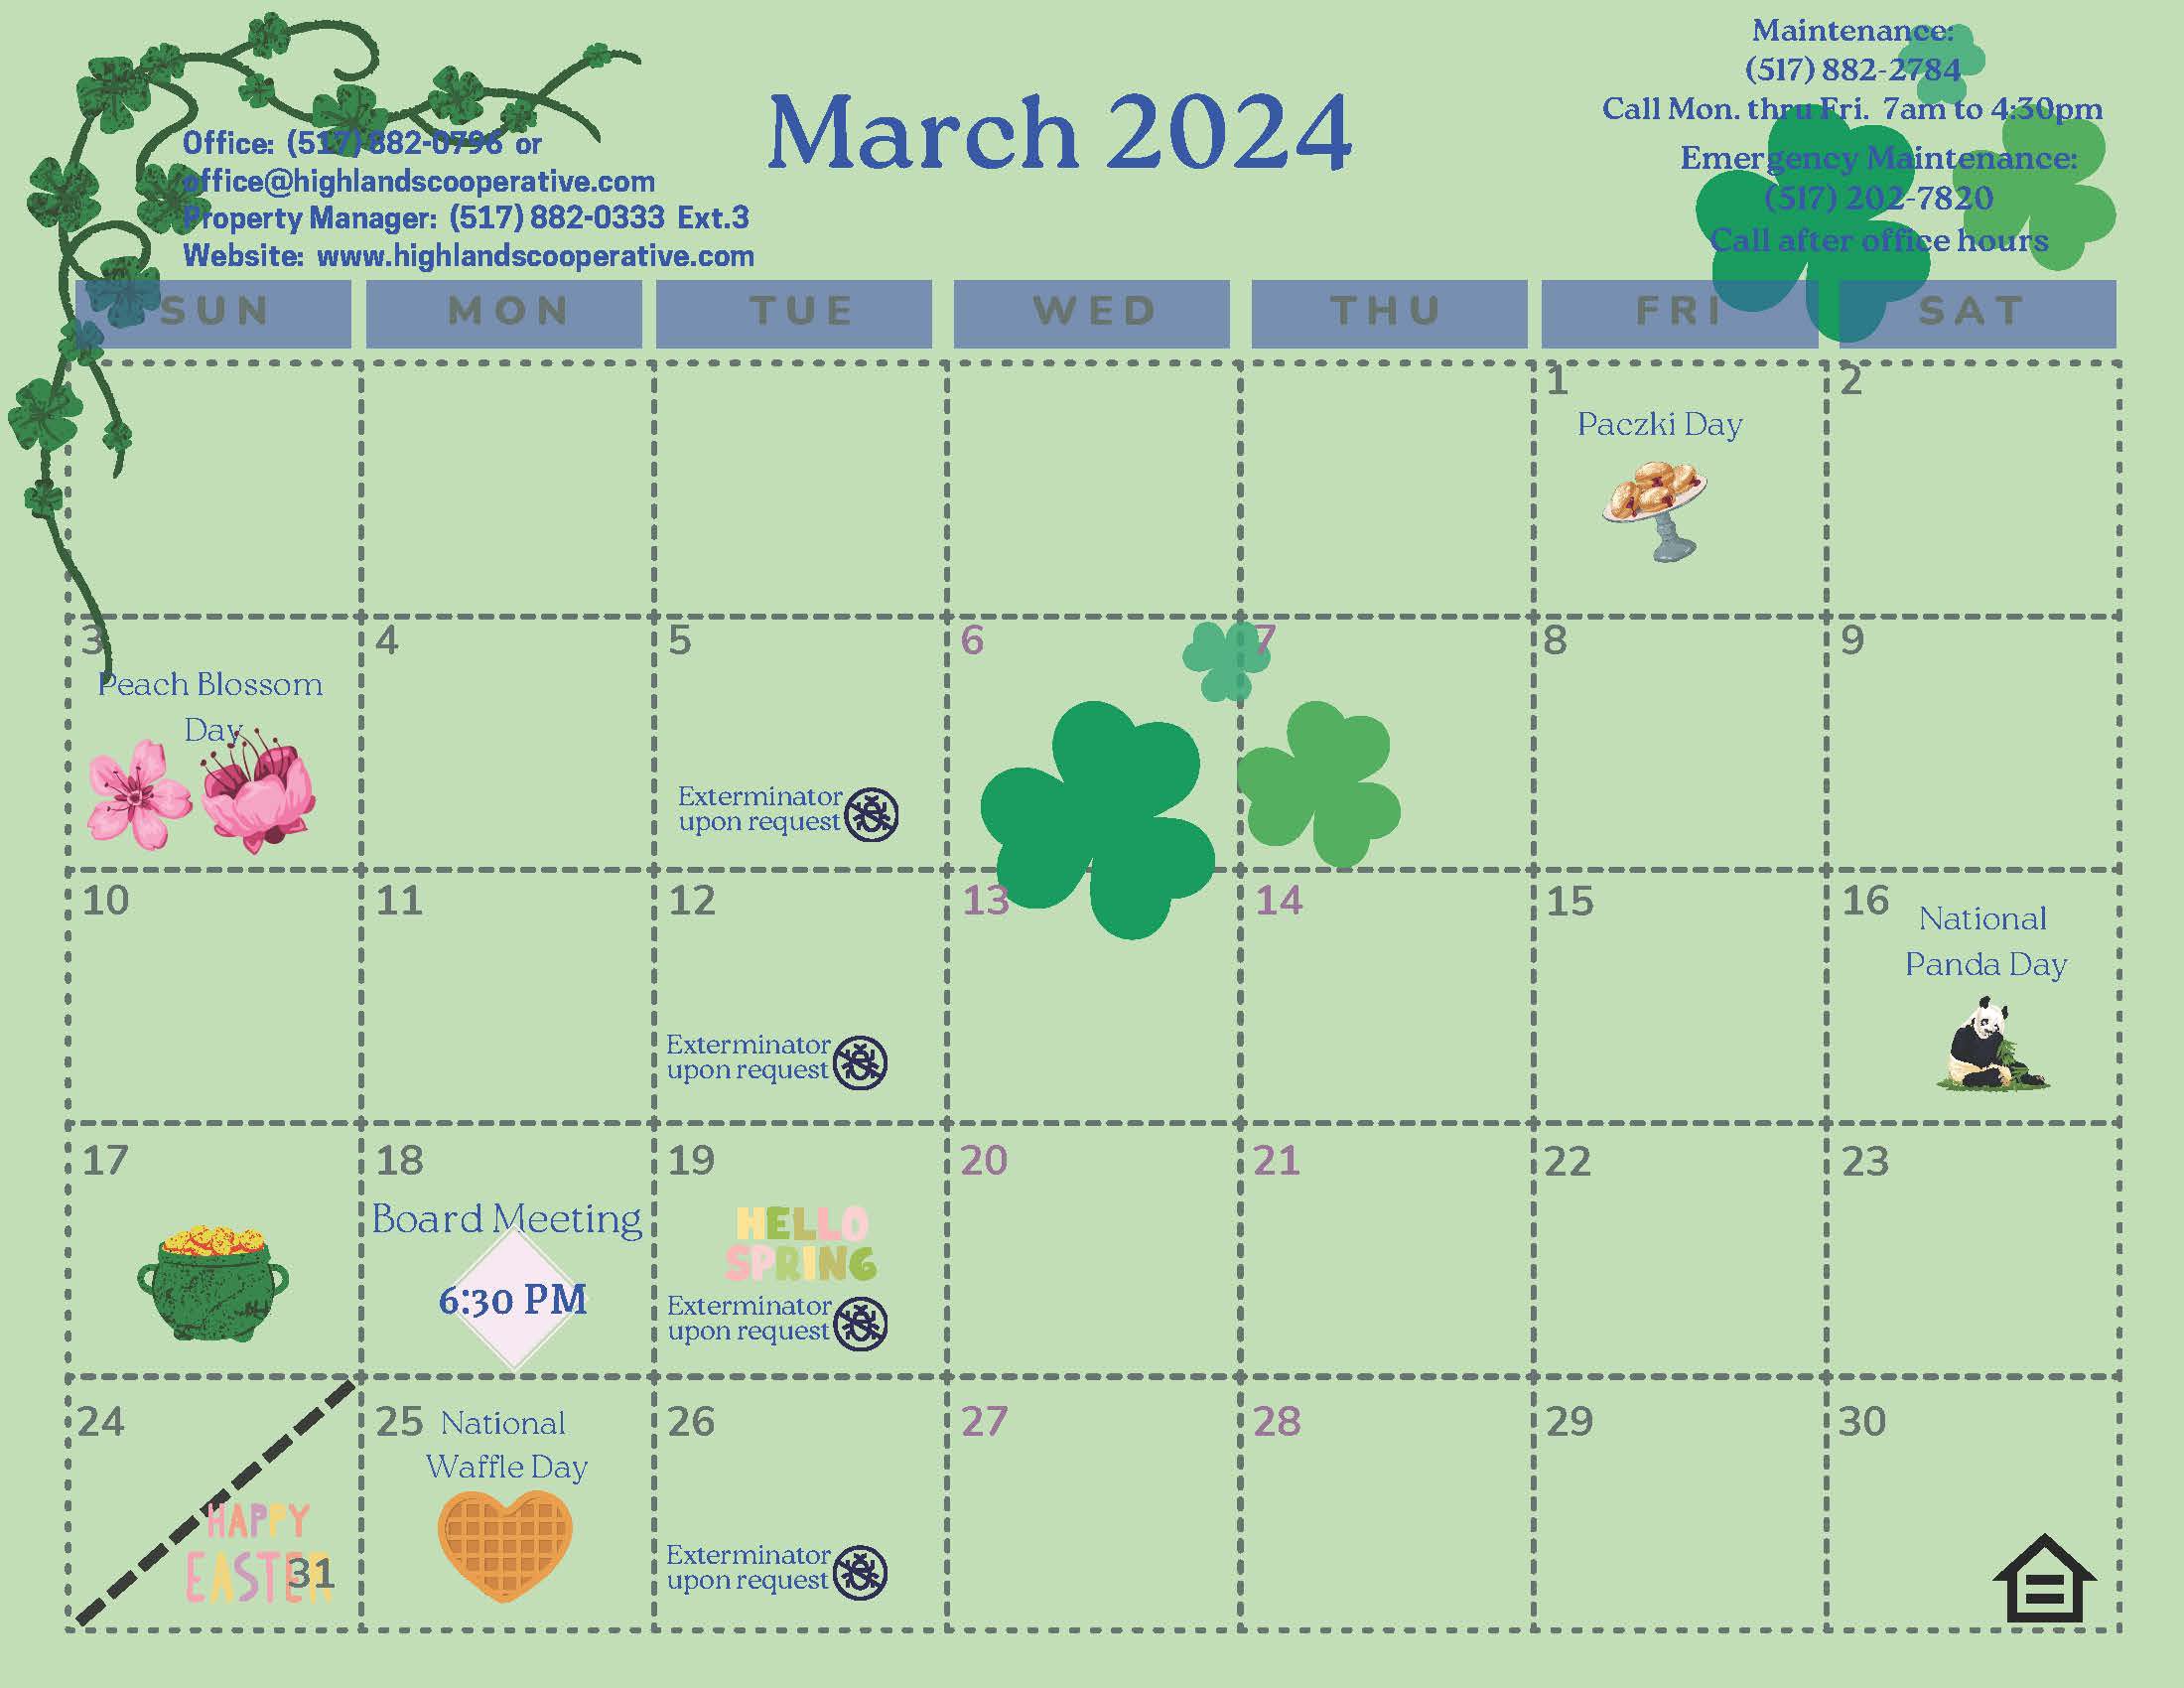 MARCH 2024 Calendar